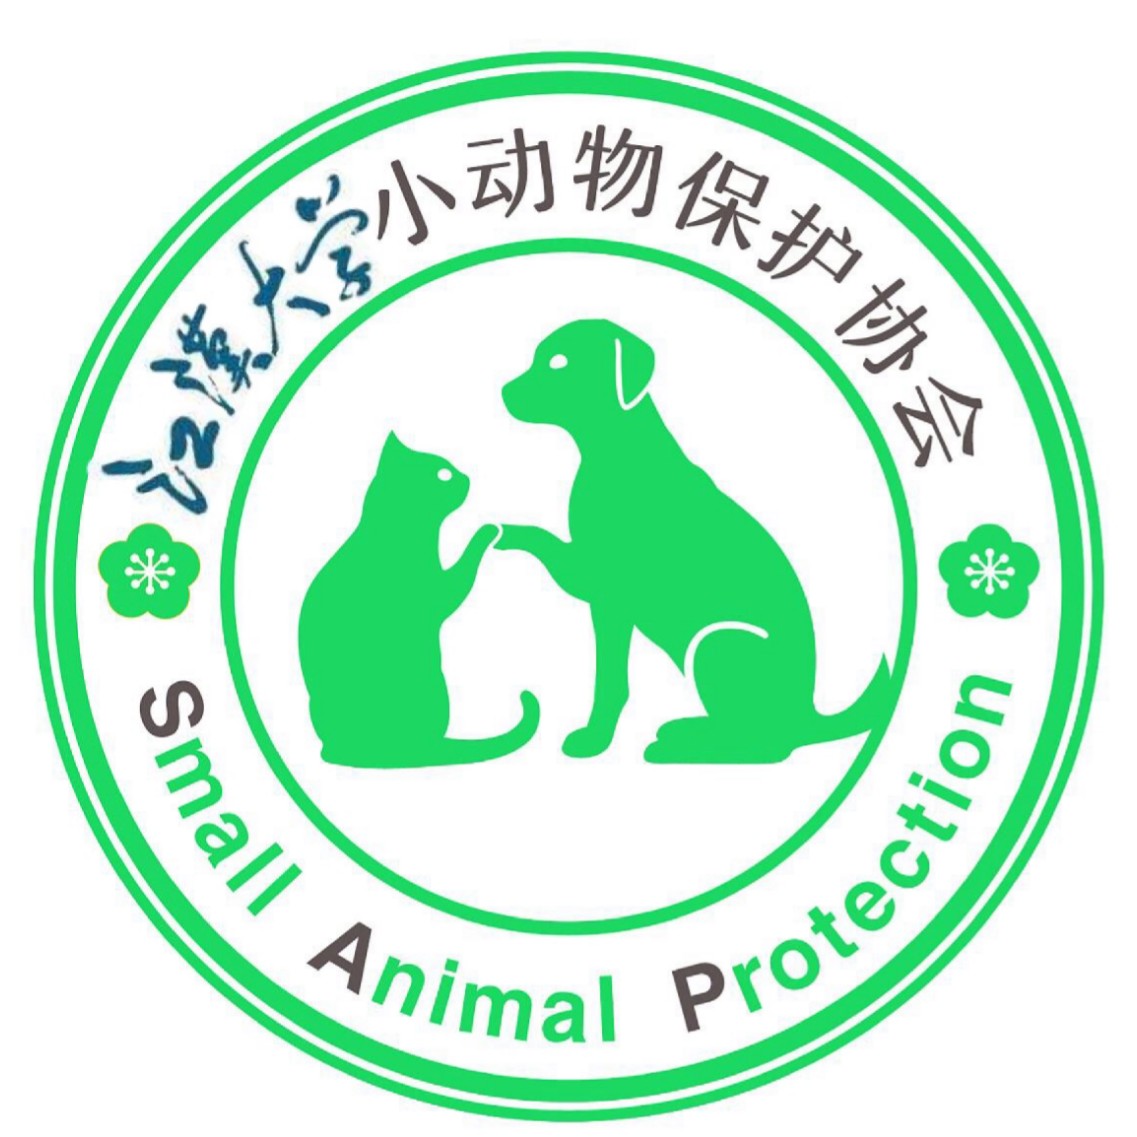 江漢大學小動物保護協會